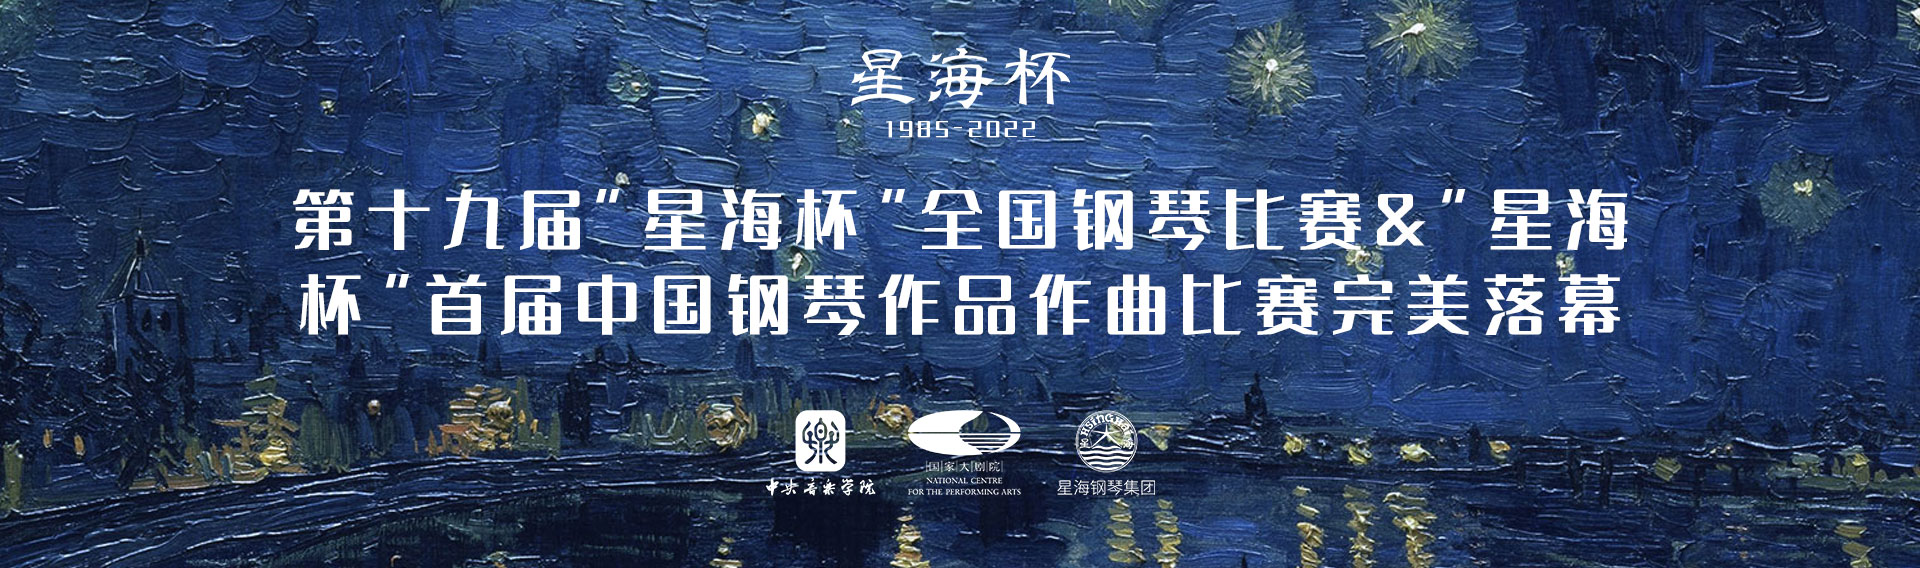 第十九屆“星海杯”全國鋼琴比賽&“星海杯”首屆中國鋼琴作品作曲比賽完美落幕